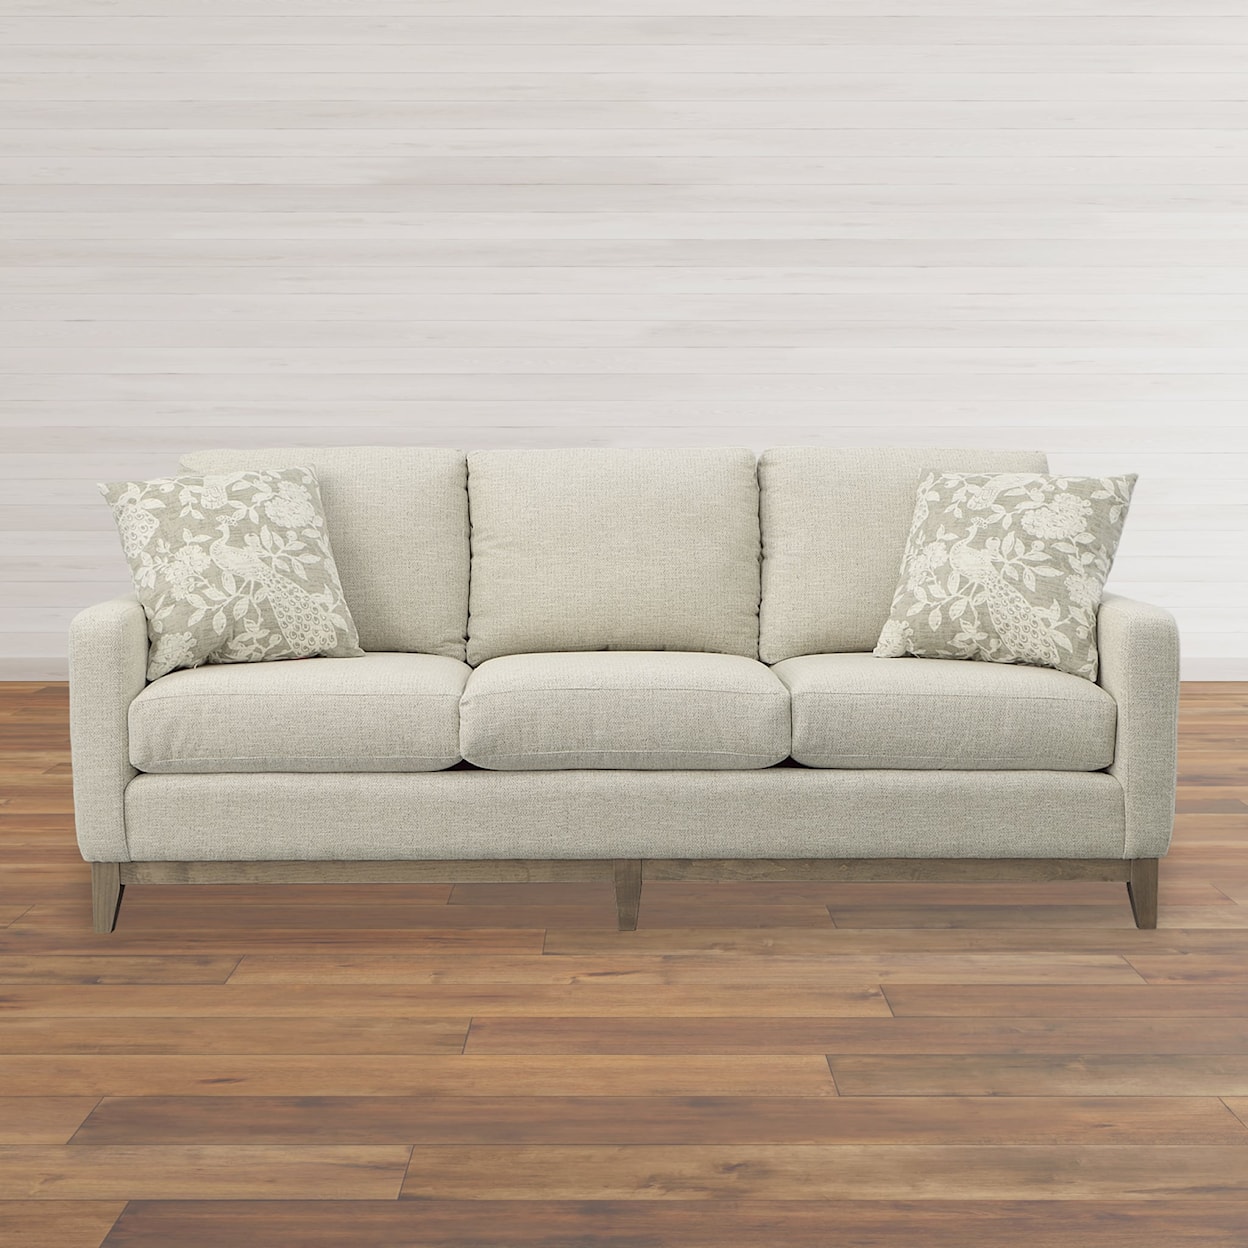 Kirkwood Designs MADI Sofa